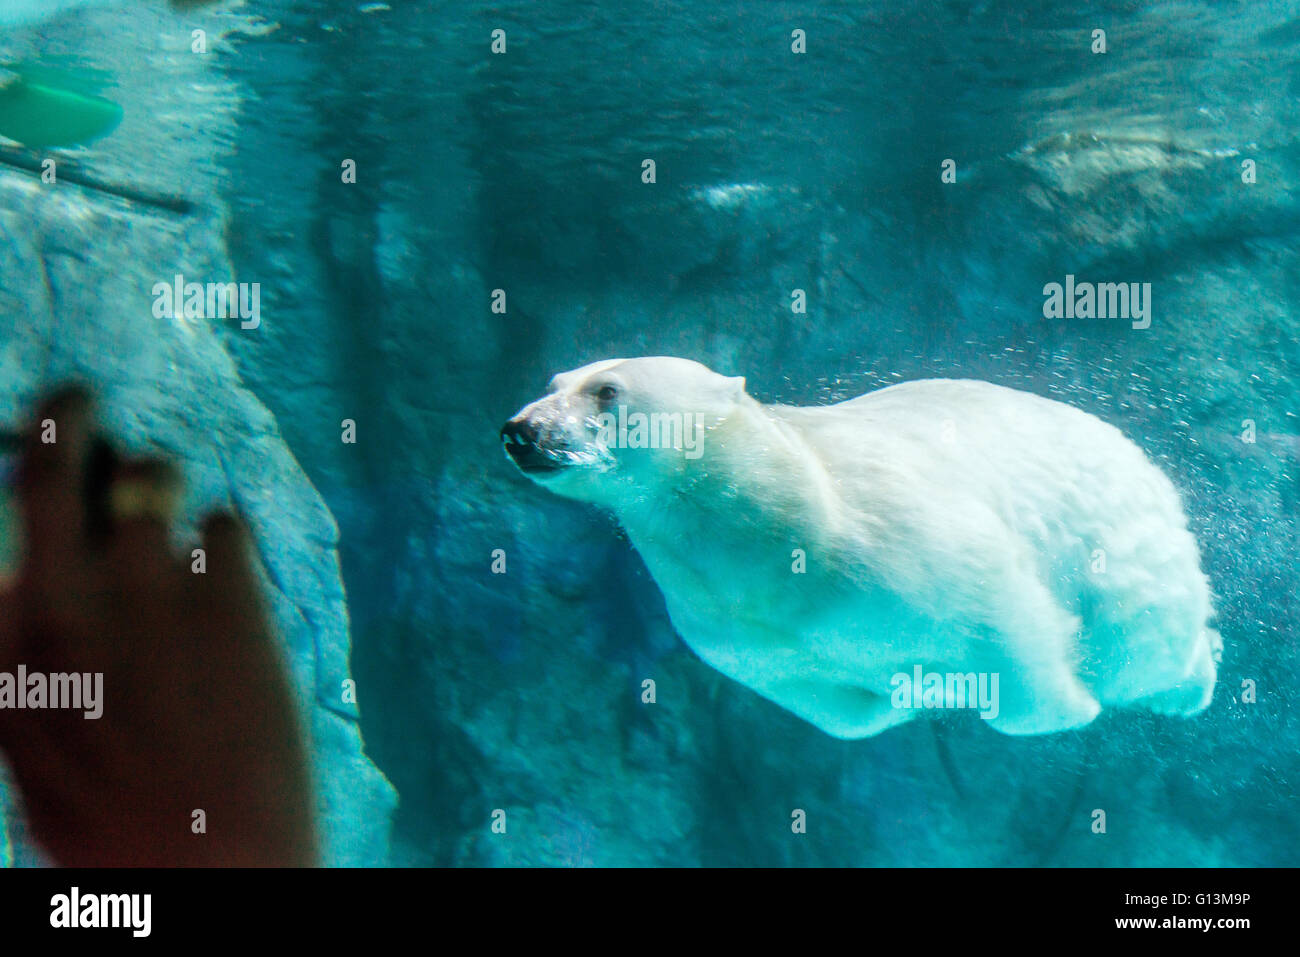 Eisbär (auch bekannt als Thalarctos Maritimus oder Ursus Maritimus) Schwimmen unter Wasser. Stockfoto